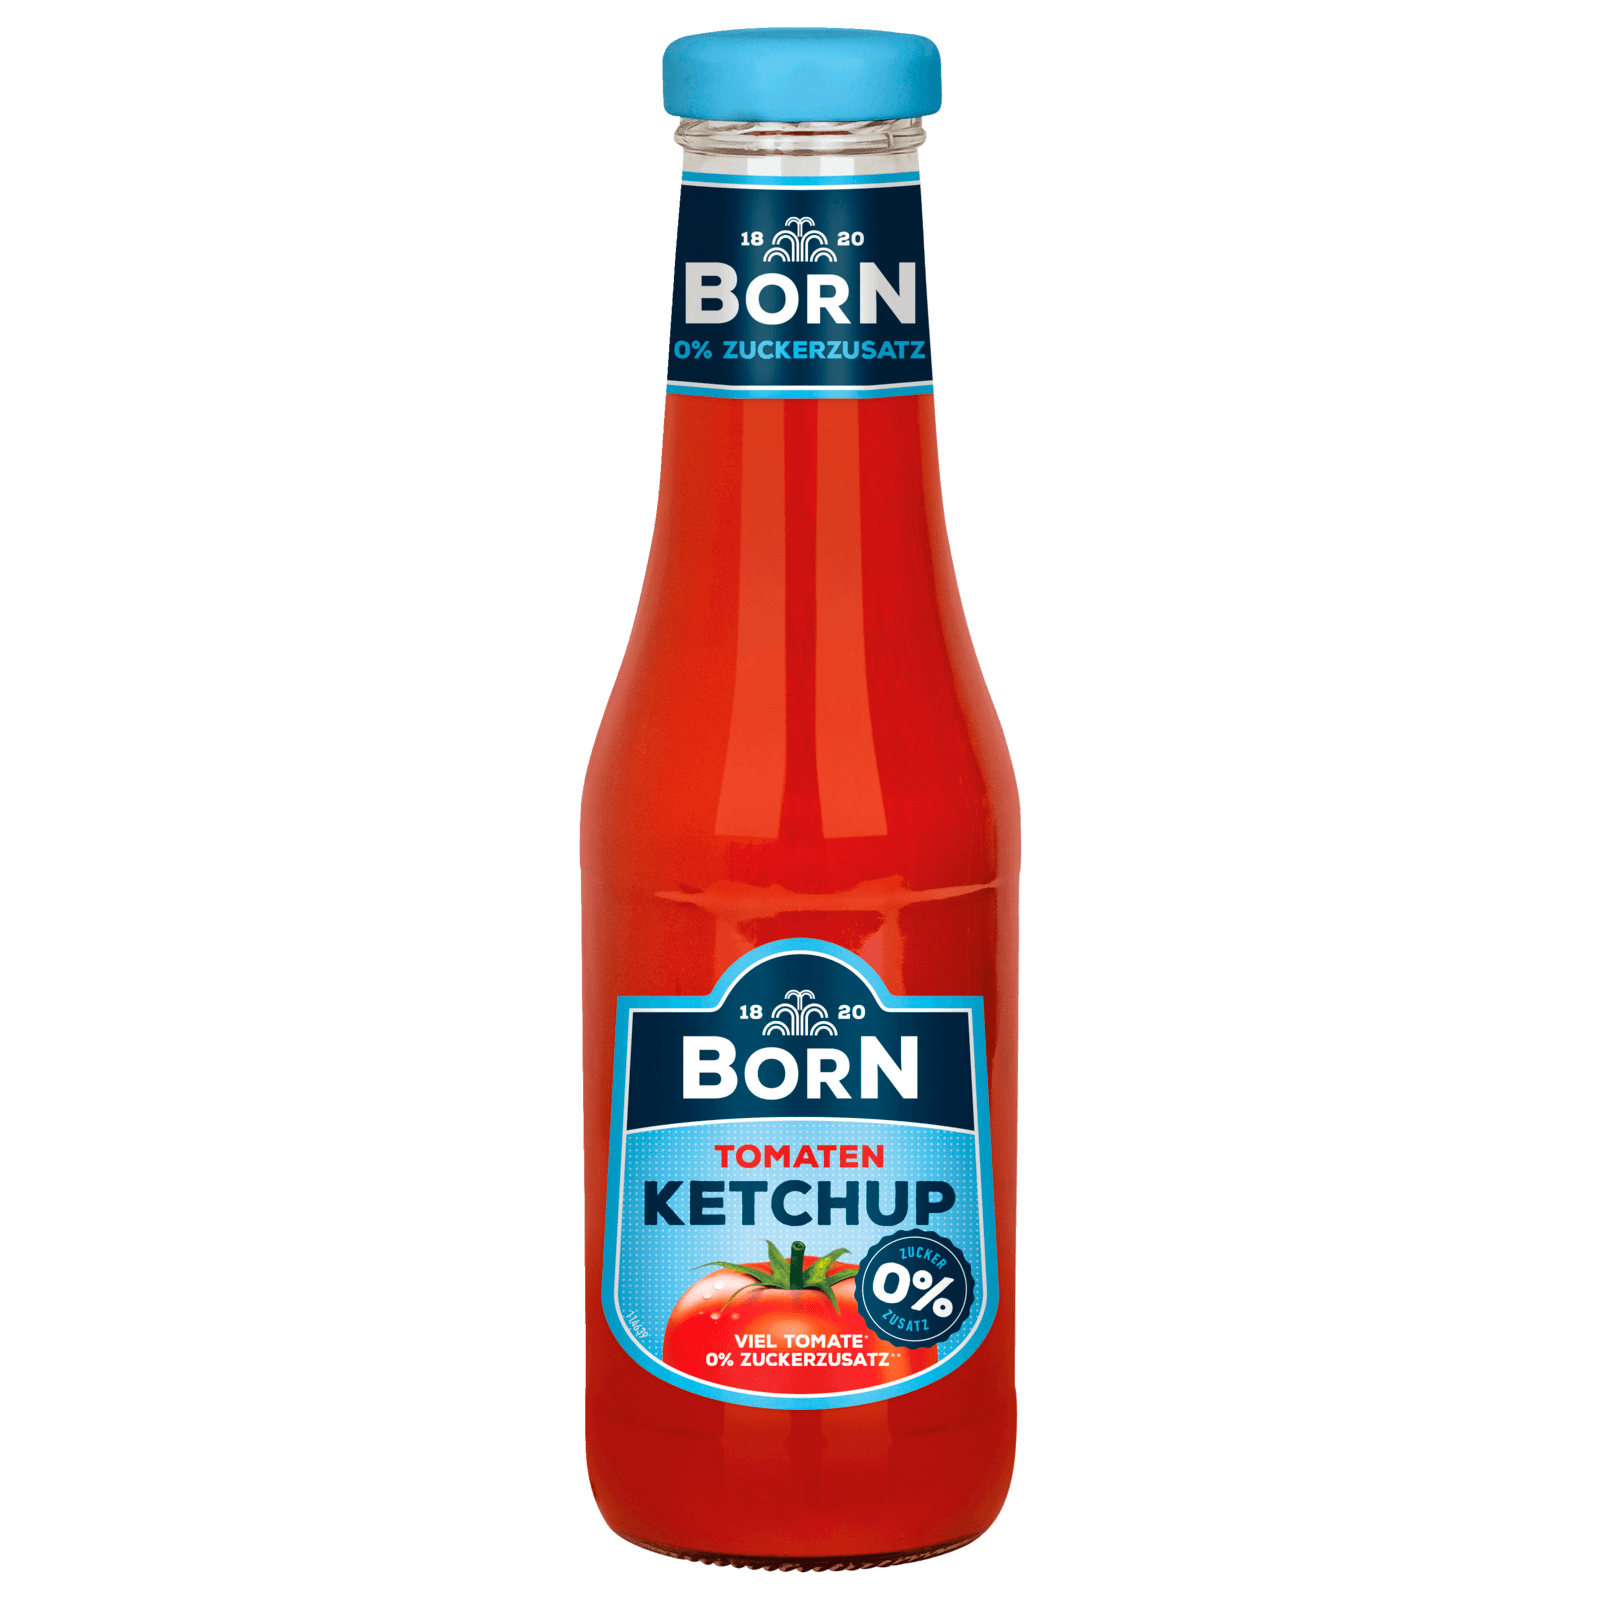 Born Tomaten Ketchup ohne Zuckerzusatz 450ml bei REWE online bestellen!